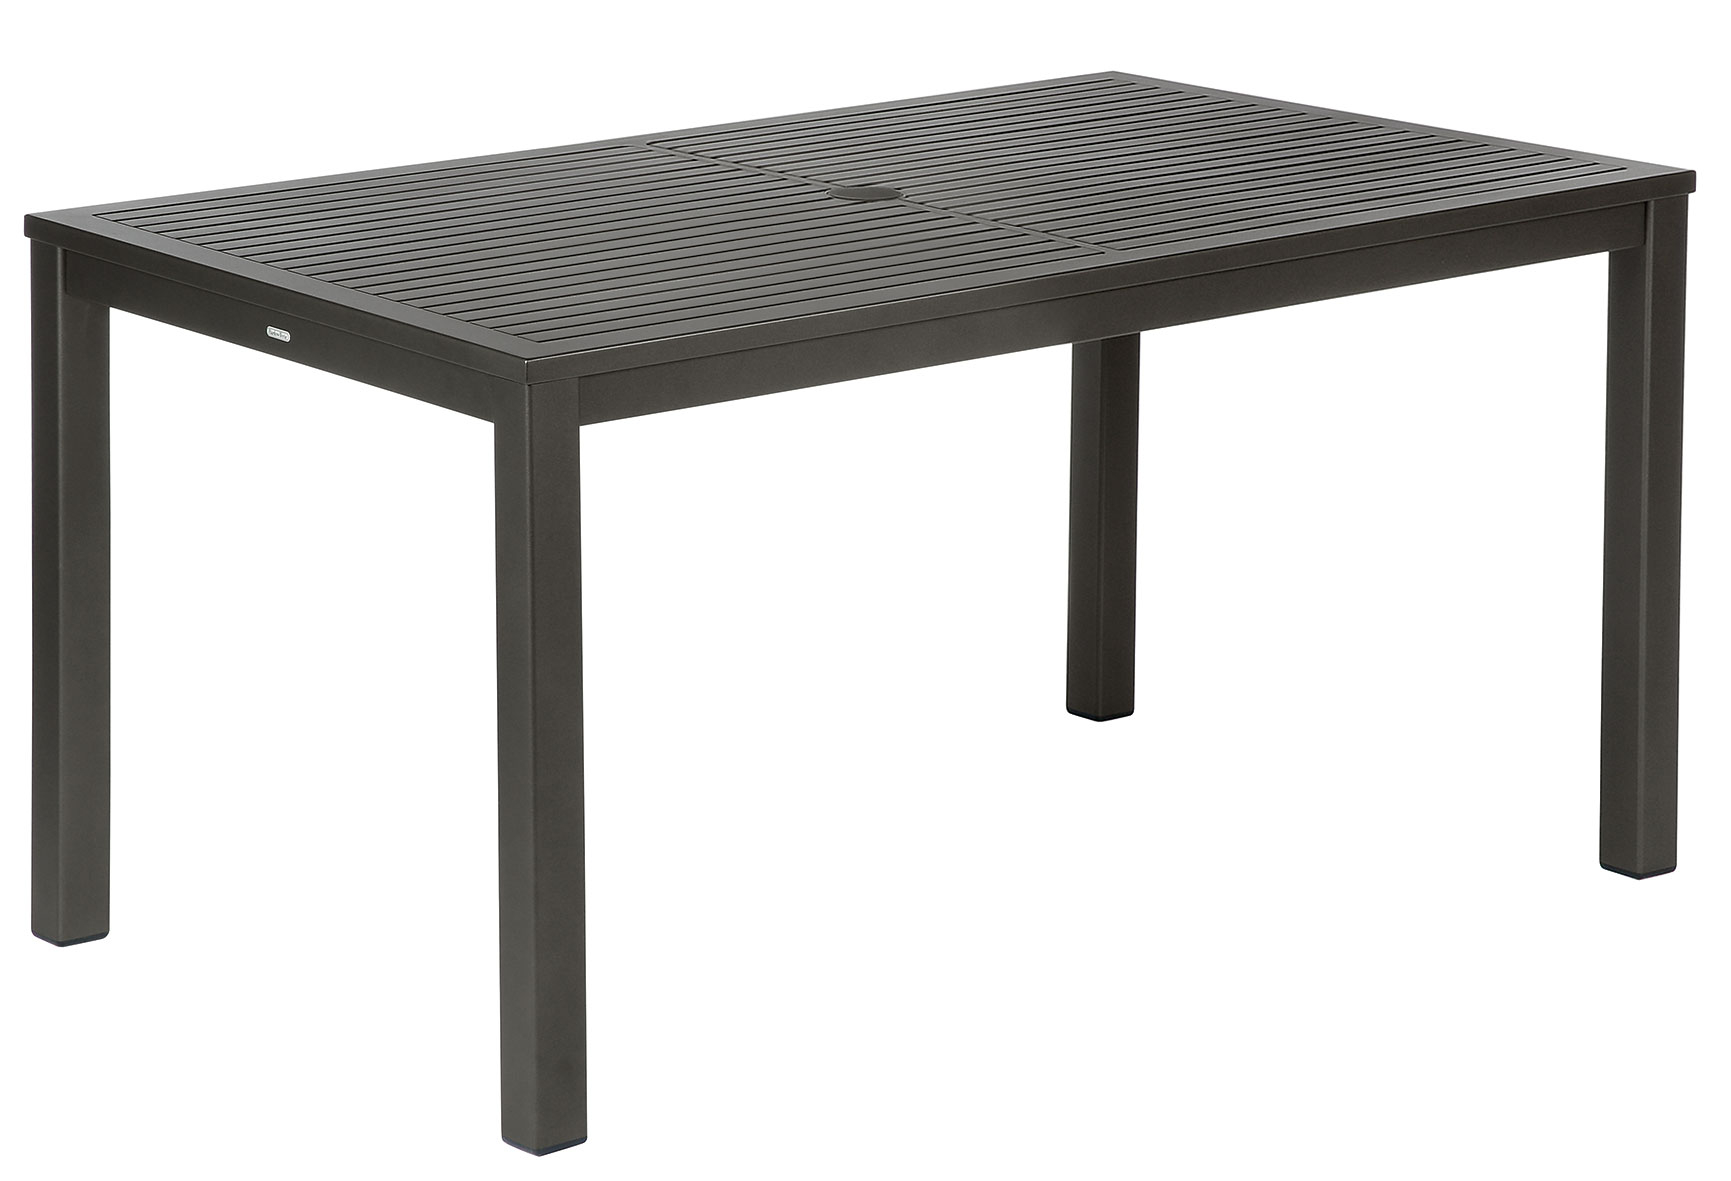 Barlow Tyrie Aura Aluminum Table 150